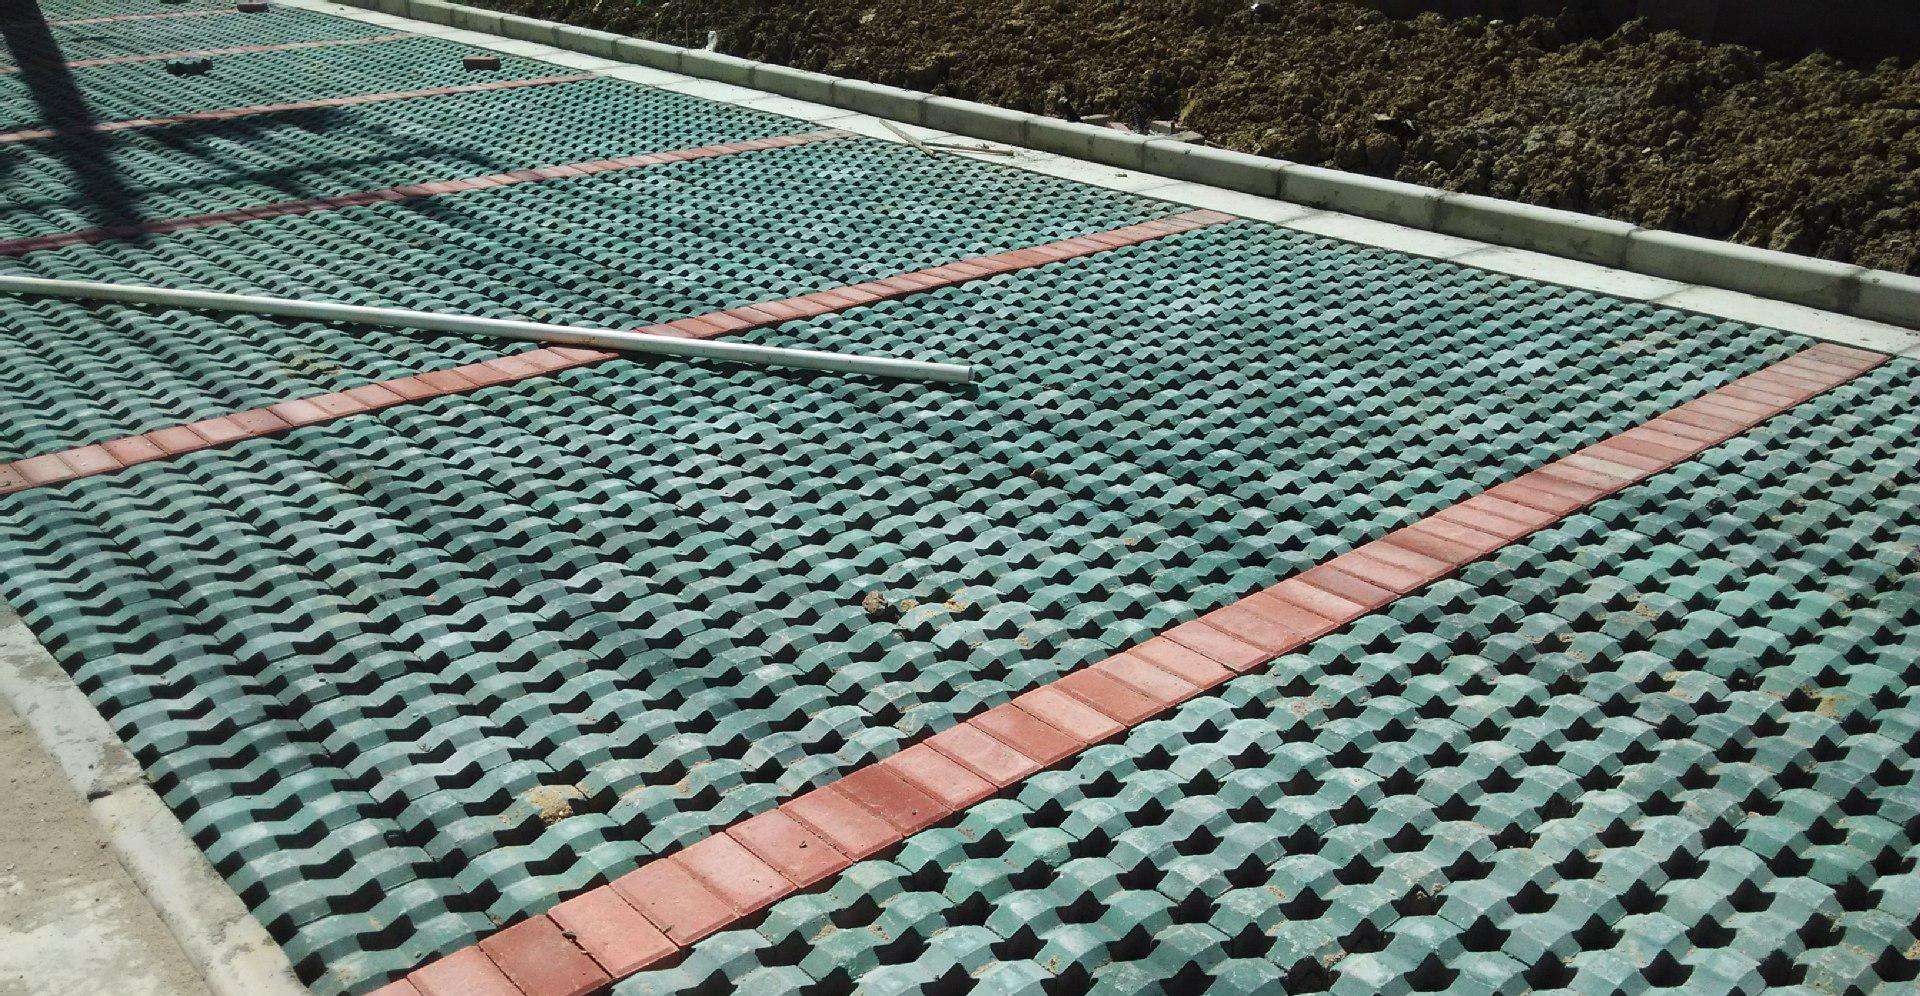 吉林砌块厂家_吉林市混凝土砖、瓦及砌块-吉林市吉林经济技术开发区宏鑫水泥制品厂